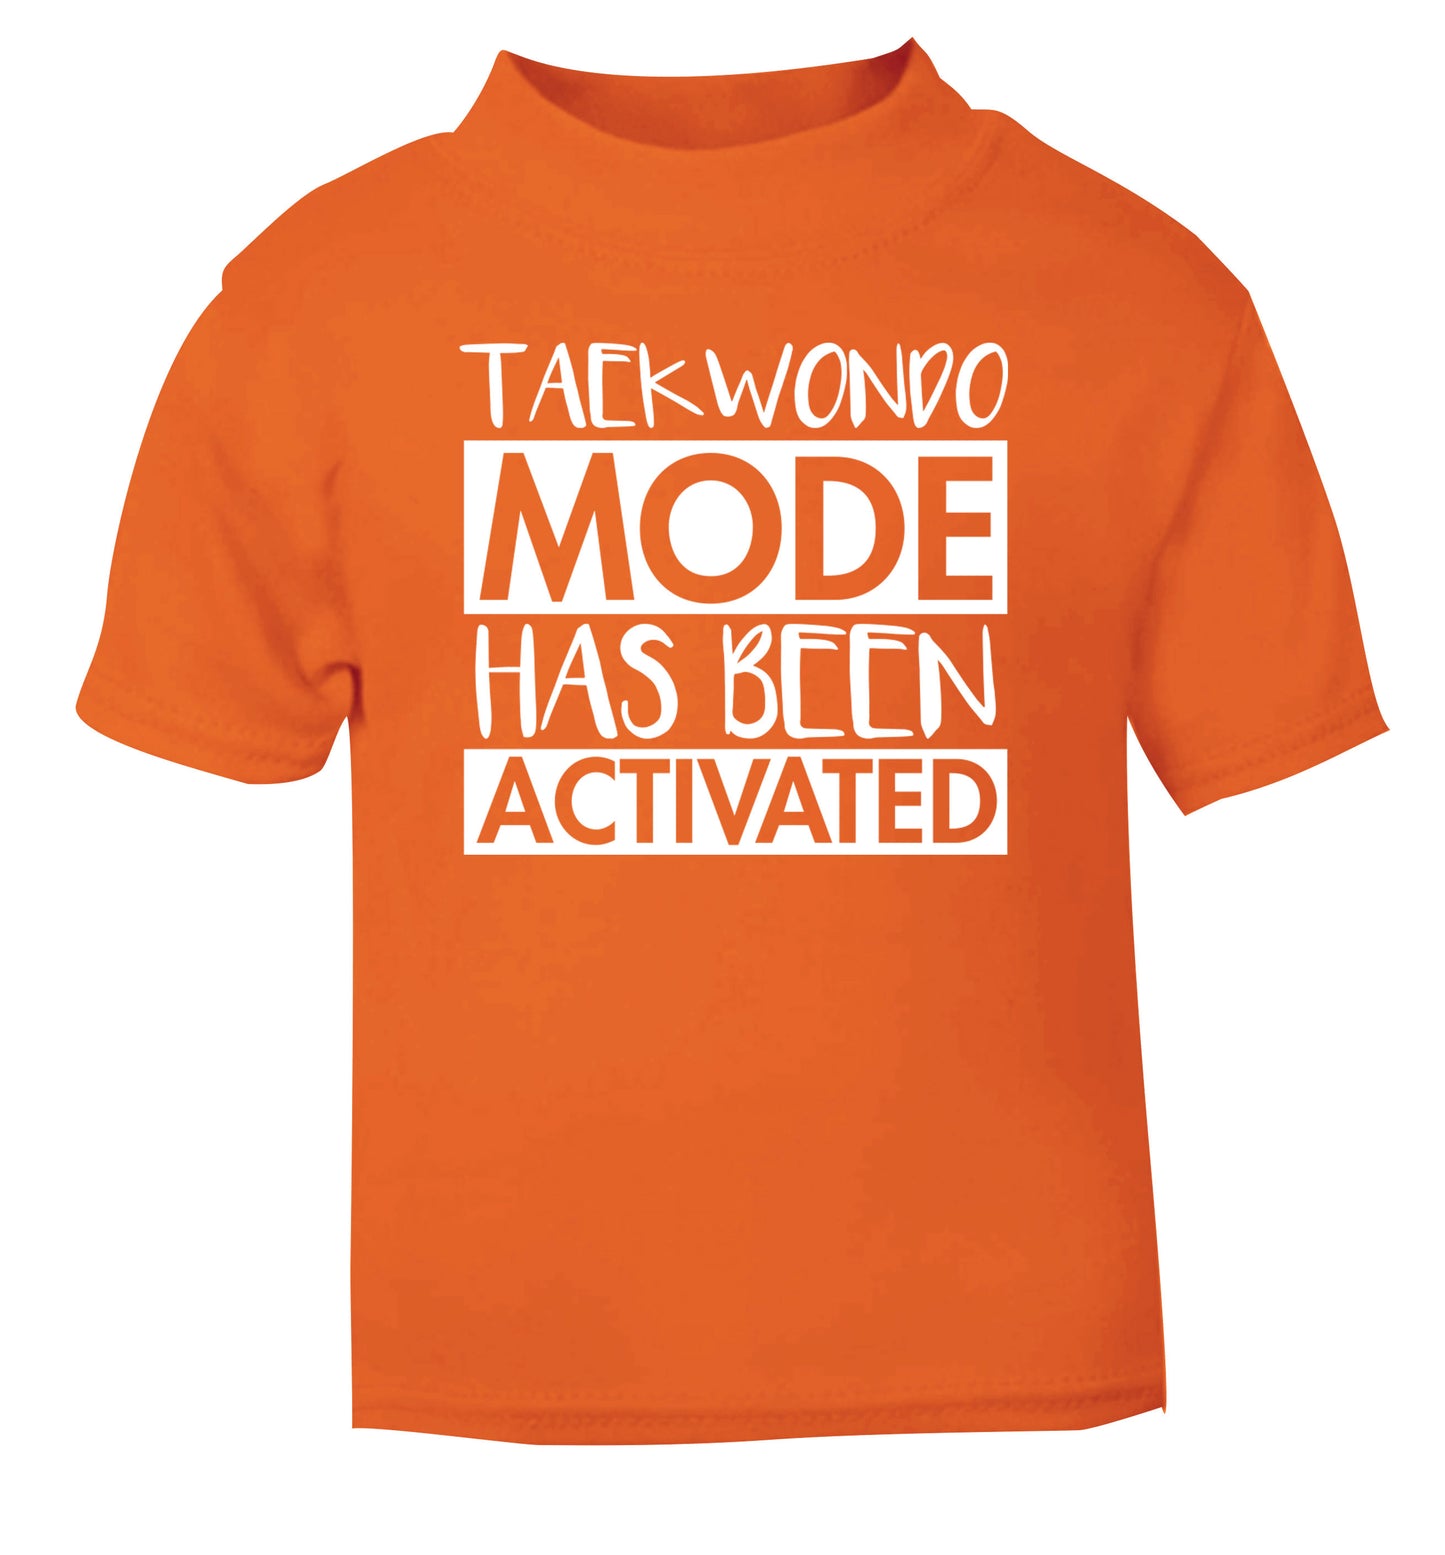 Taekwondo mode activated orange Baby Toddler Tshirt 2 Years